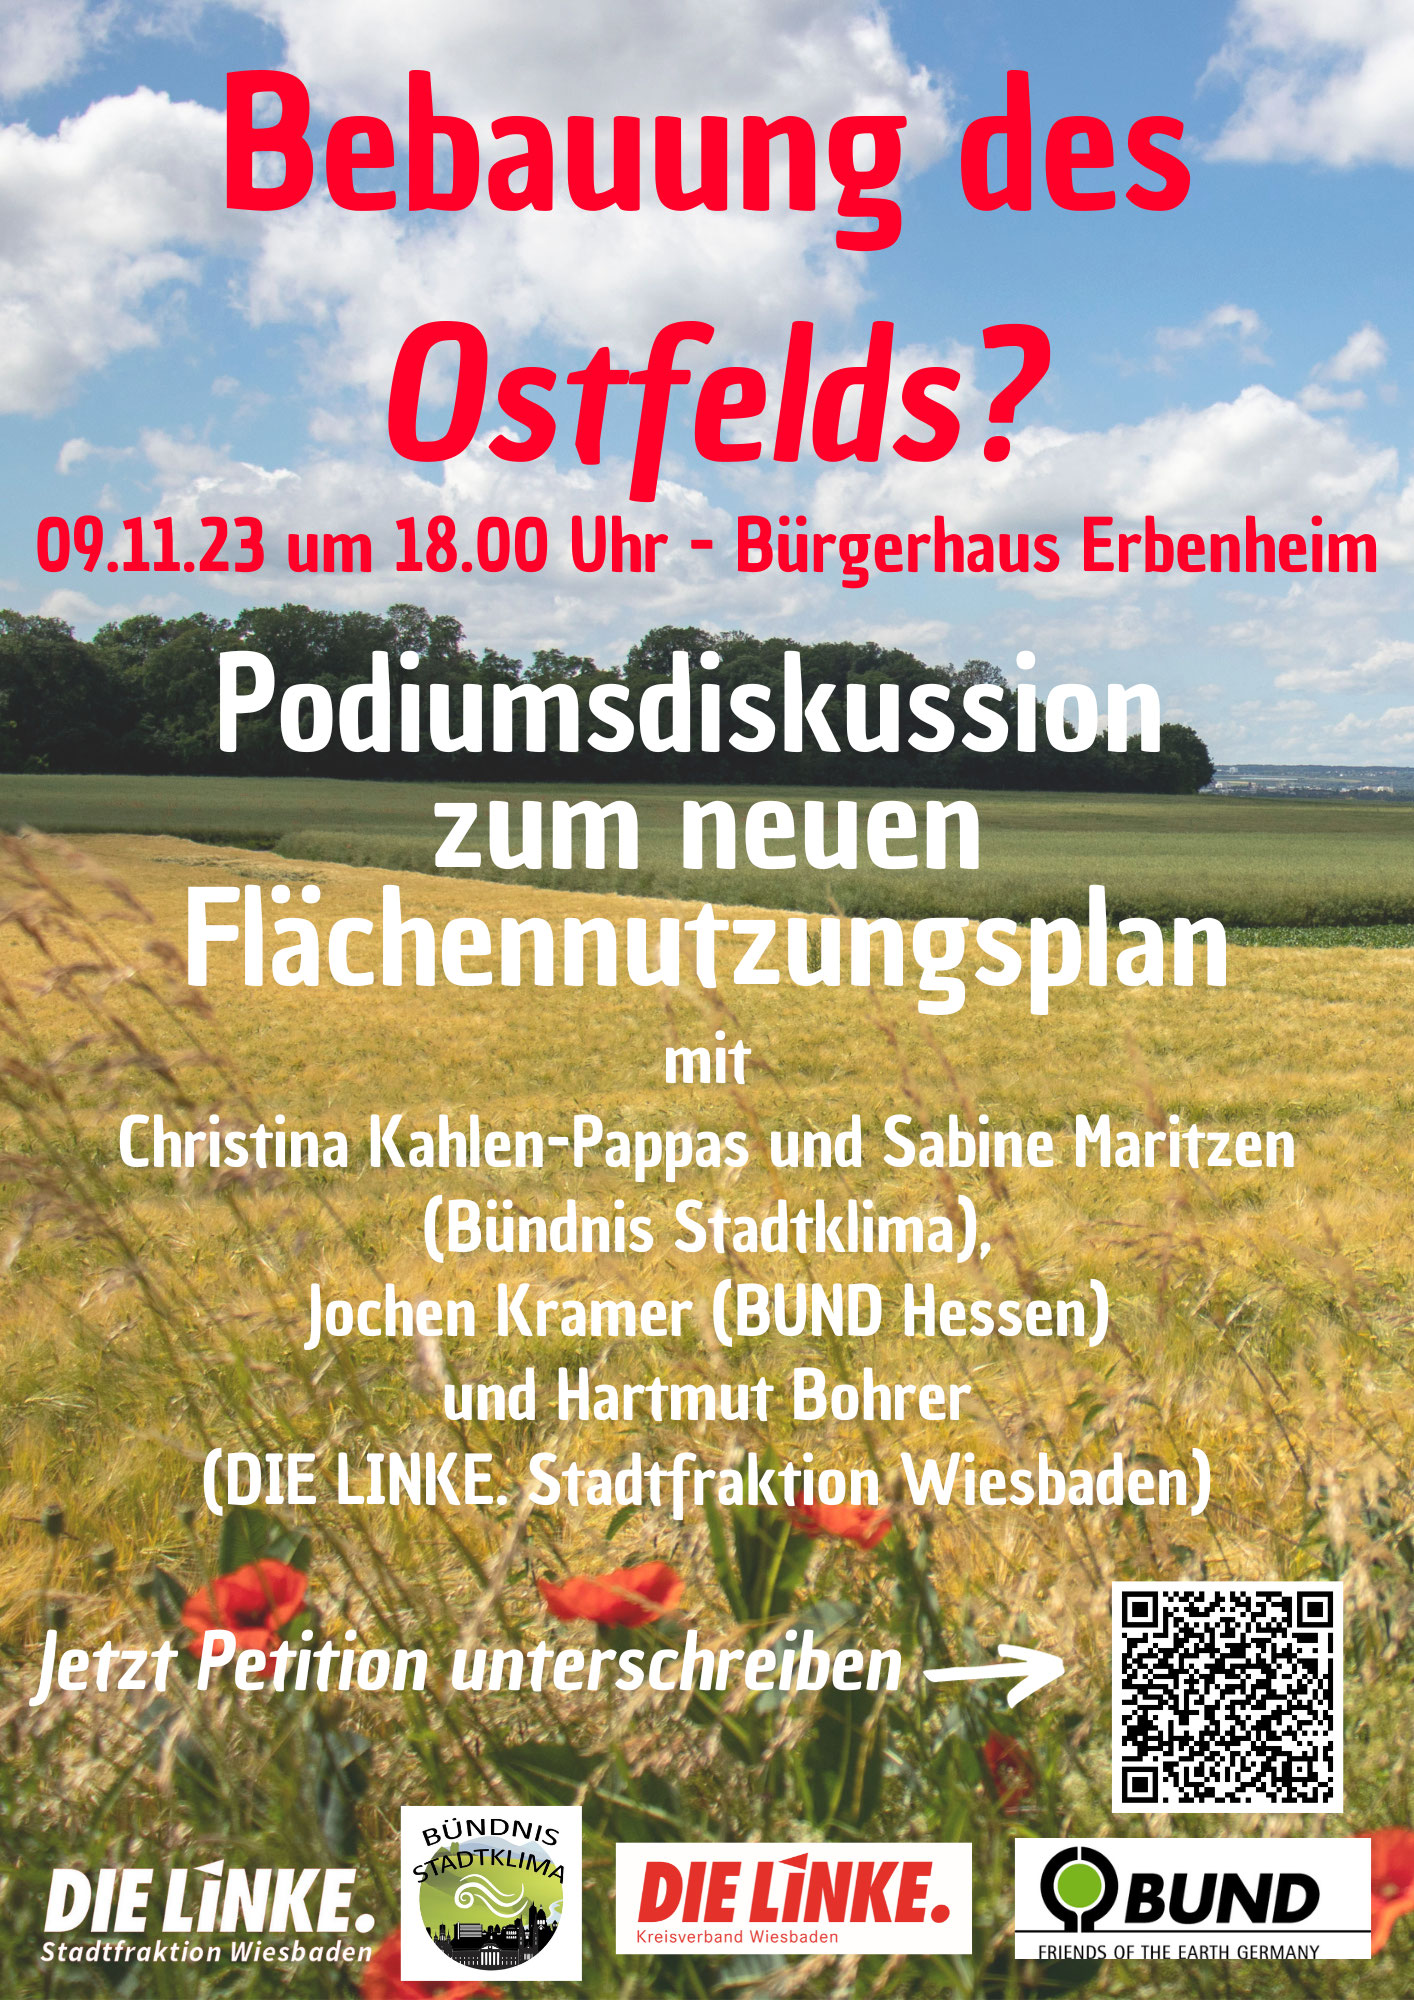 Podiumsdiskussion: Flächennutzungplan und Ostfeld 9. November 2023, Erbenheim